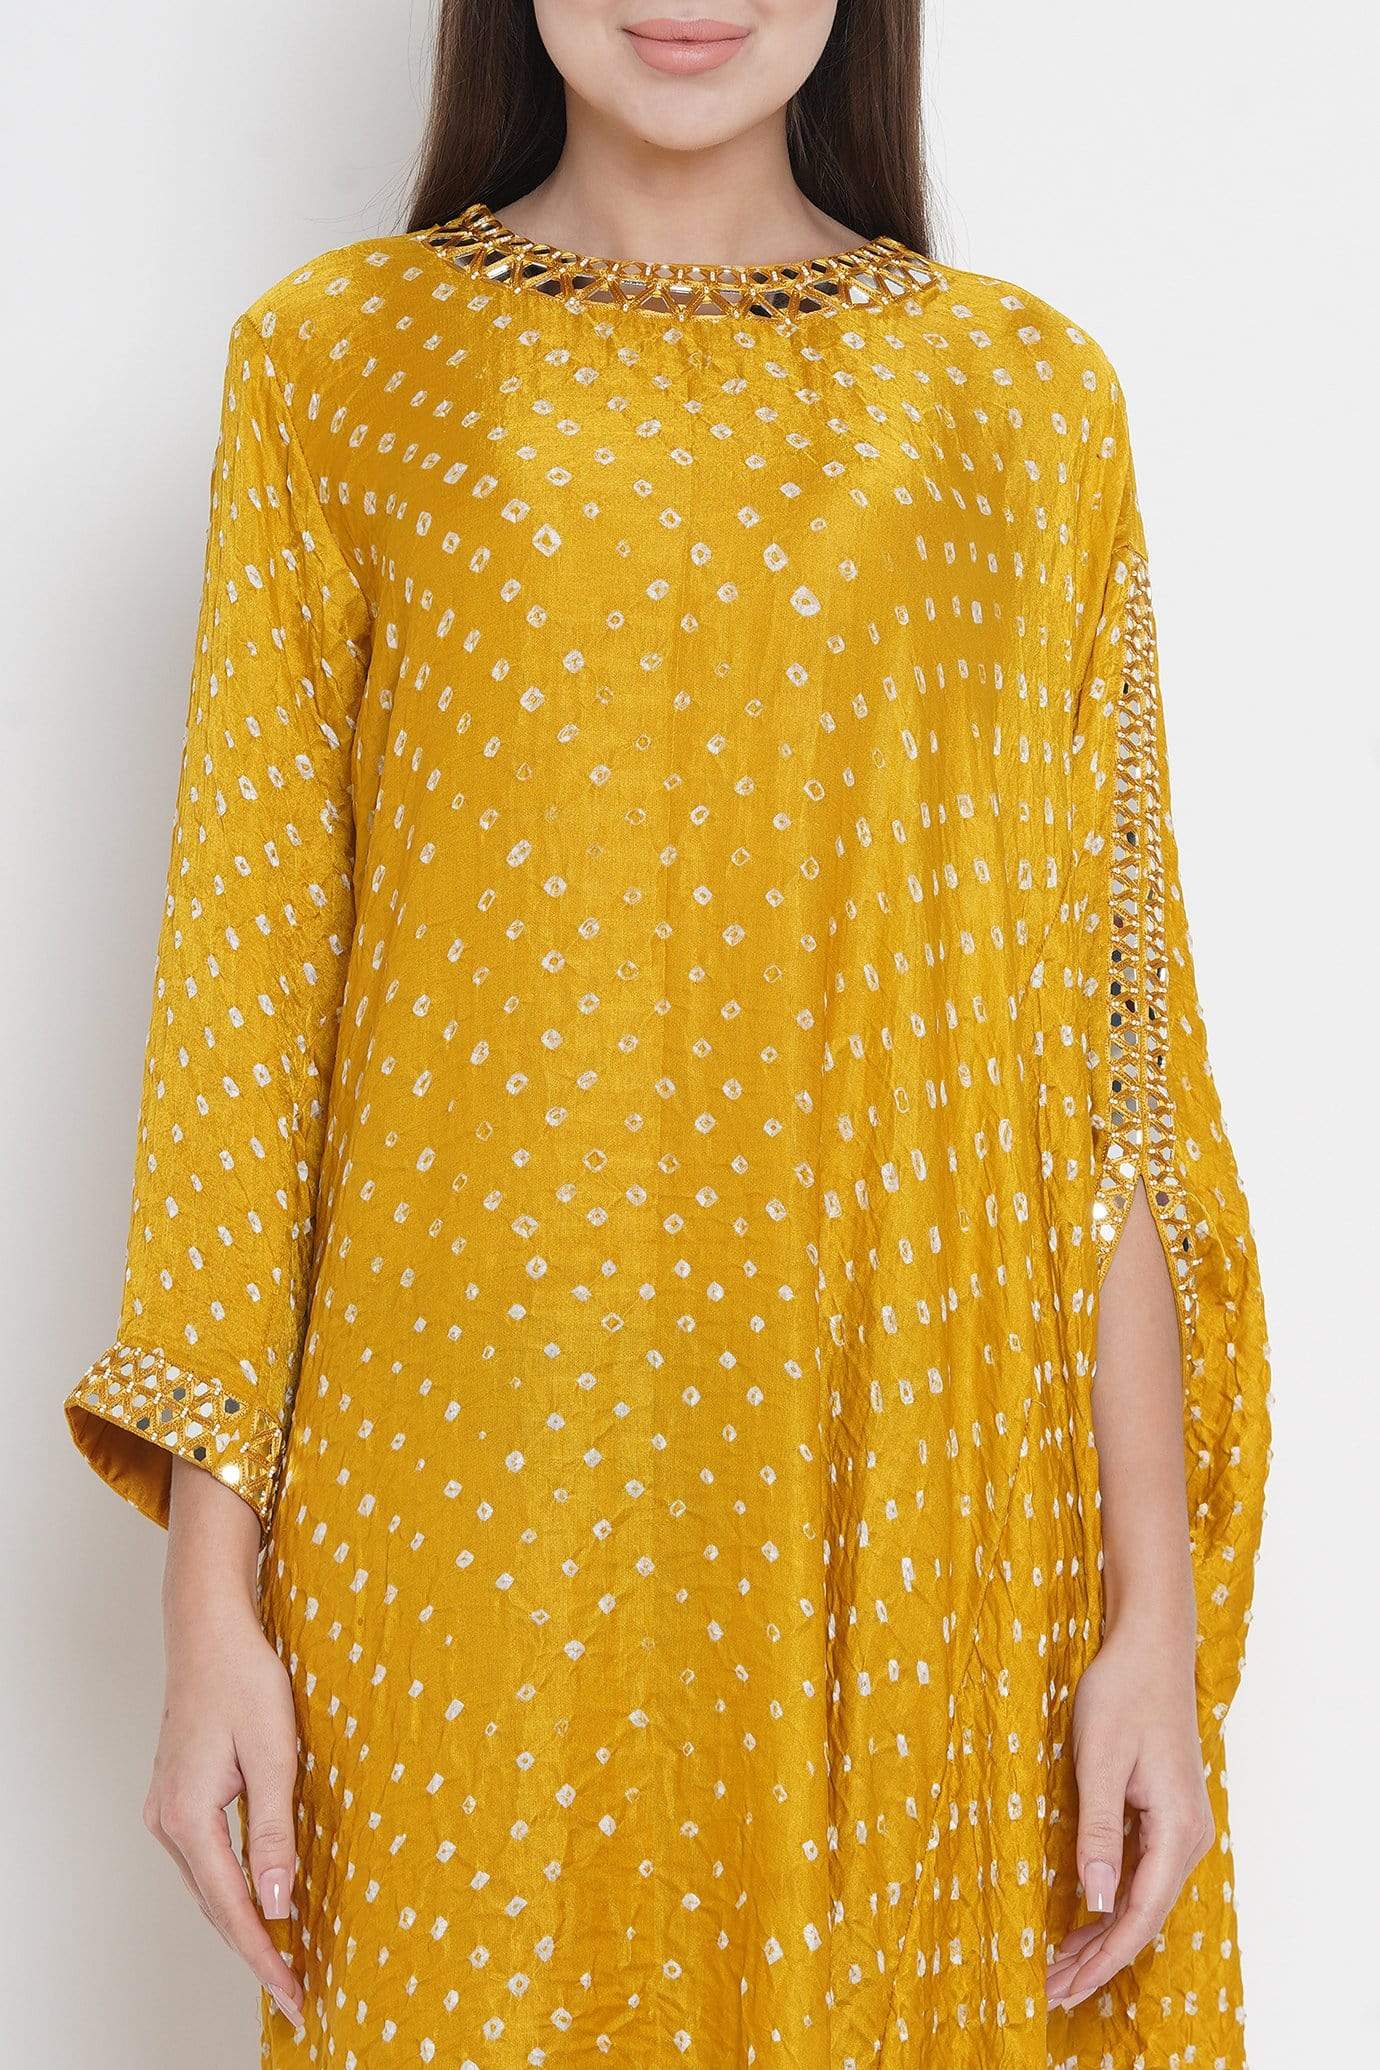 Yellow Silk Bandhani Dress